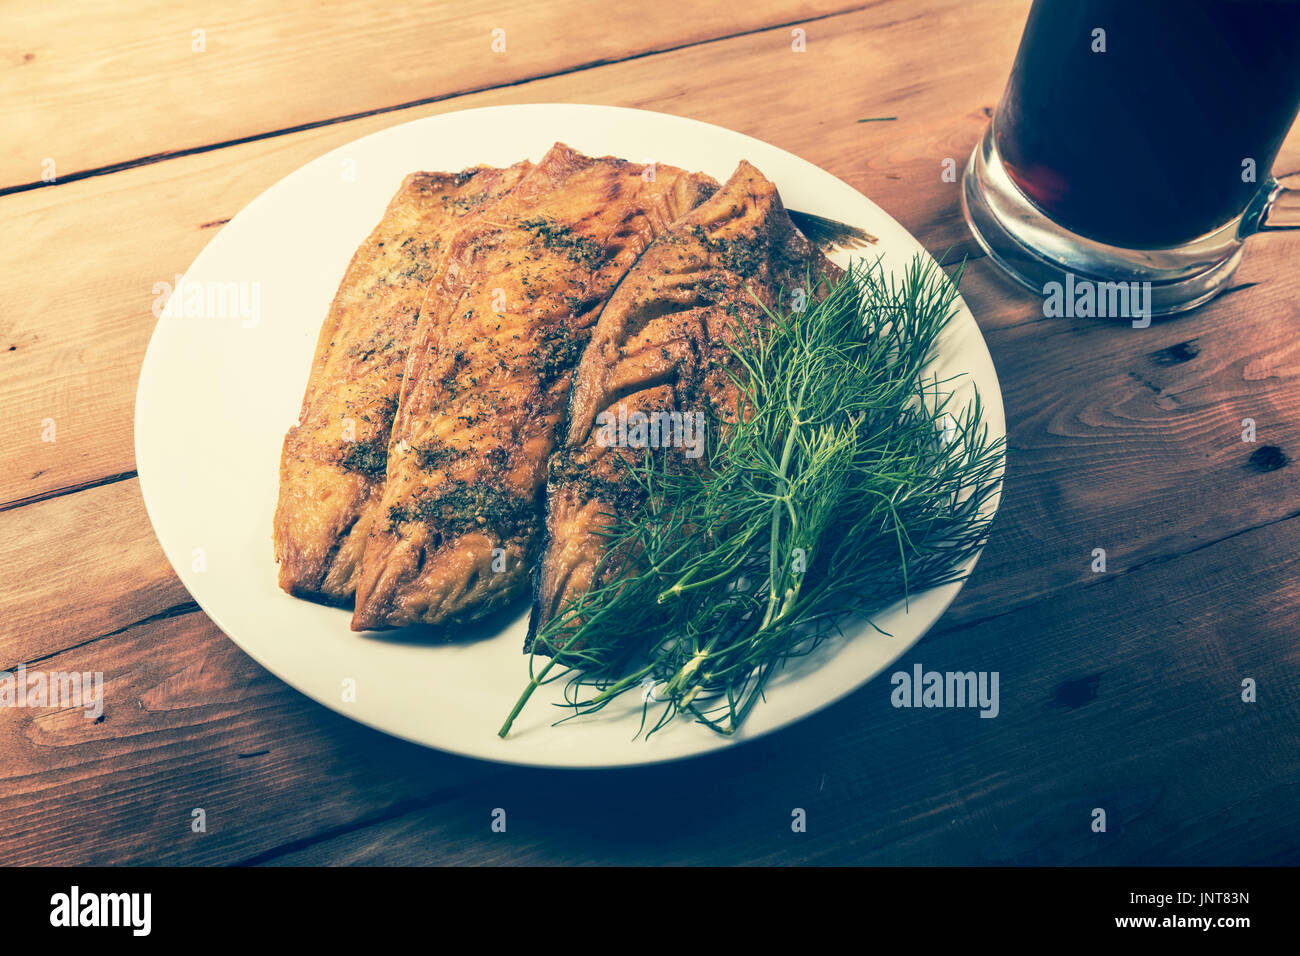 Sgombro affumicato filetto di pesce con le erbe sul piatto bianco Foto Stock